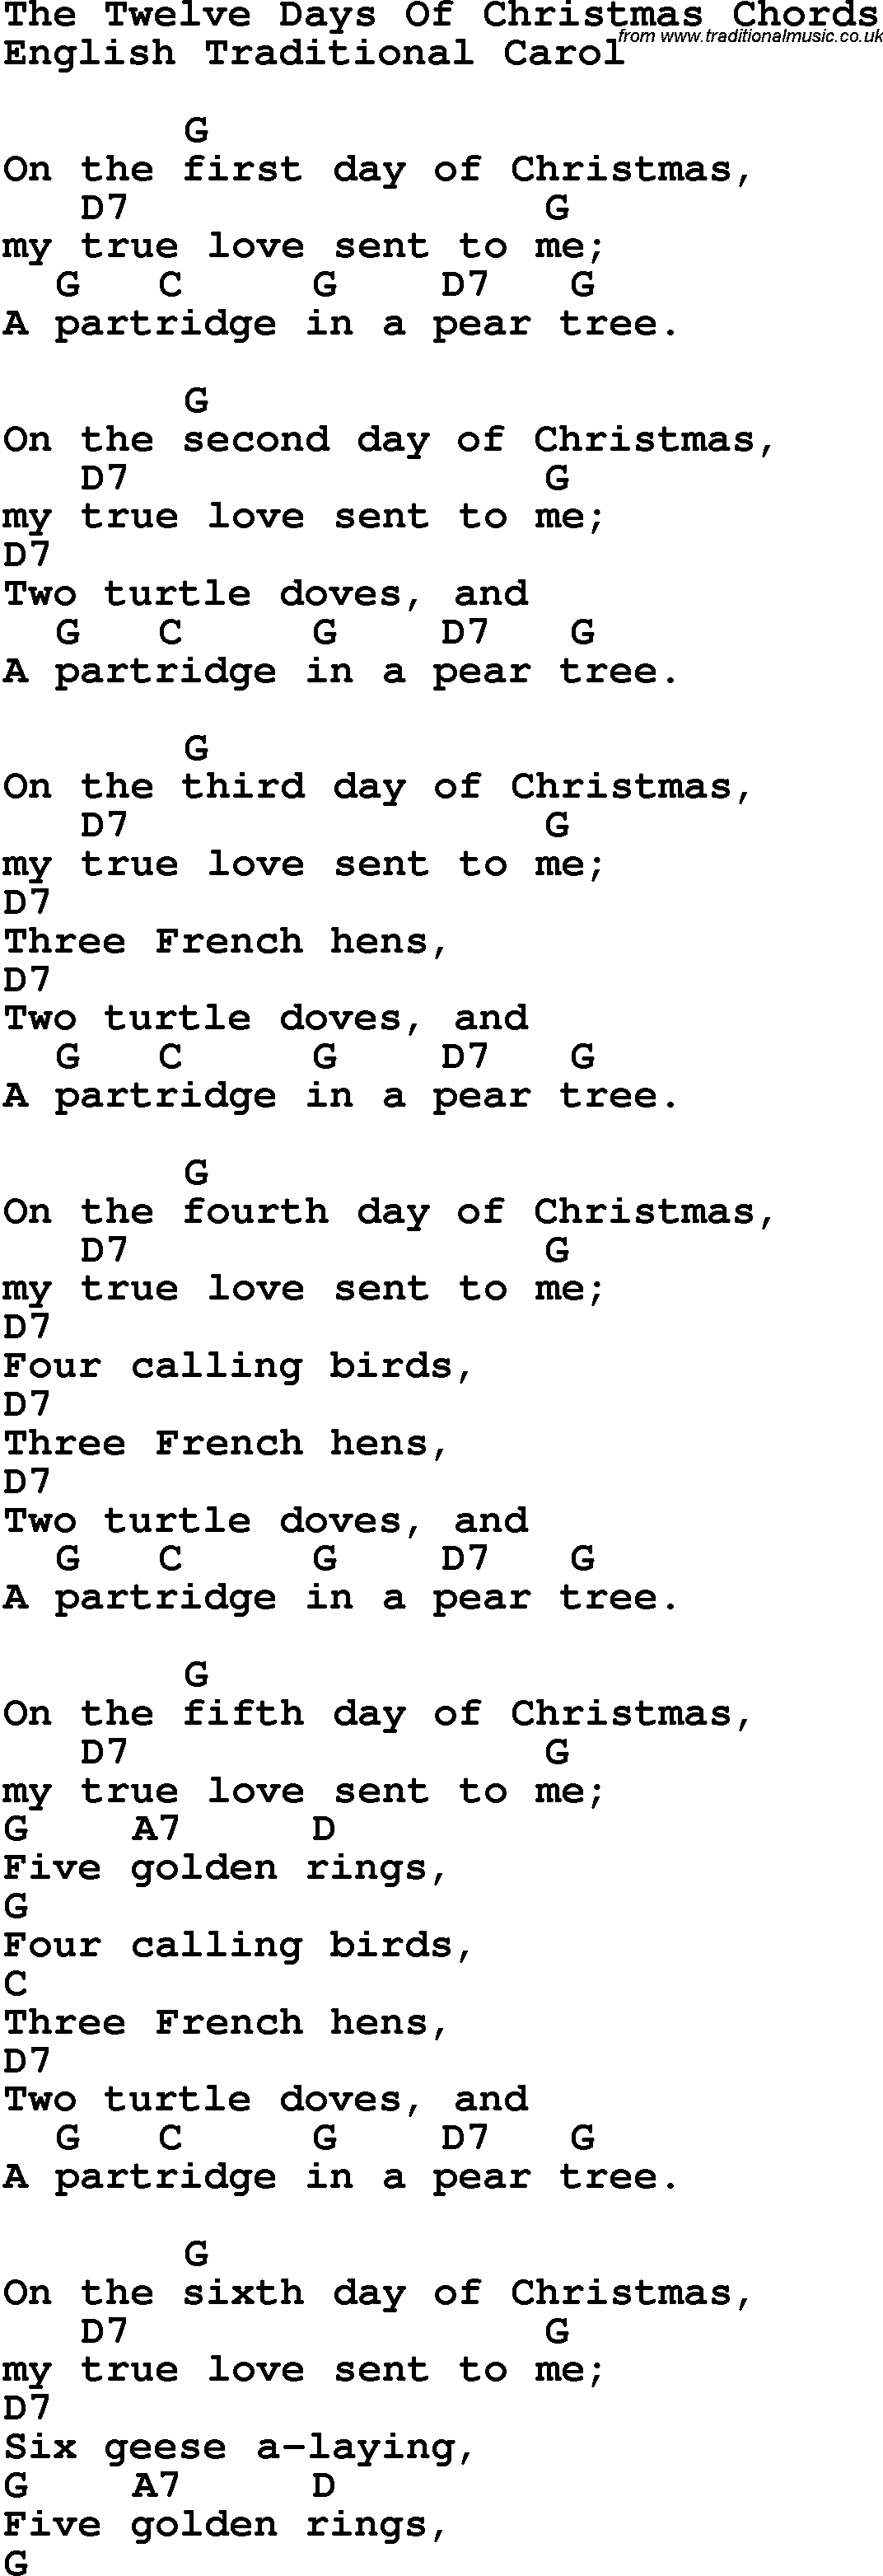 Twelve Days Of Christmas Lyrics Printable Search Results Christmas